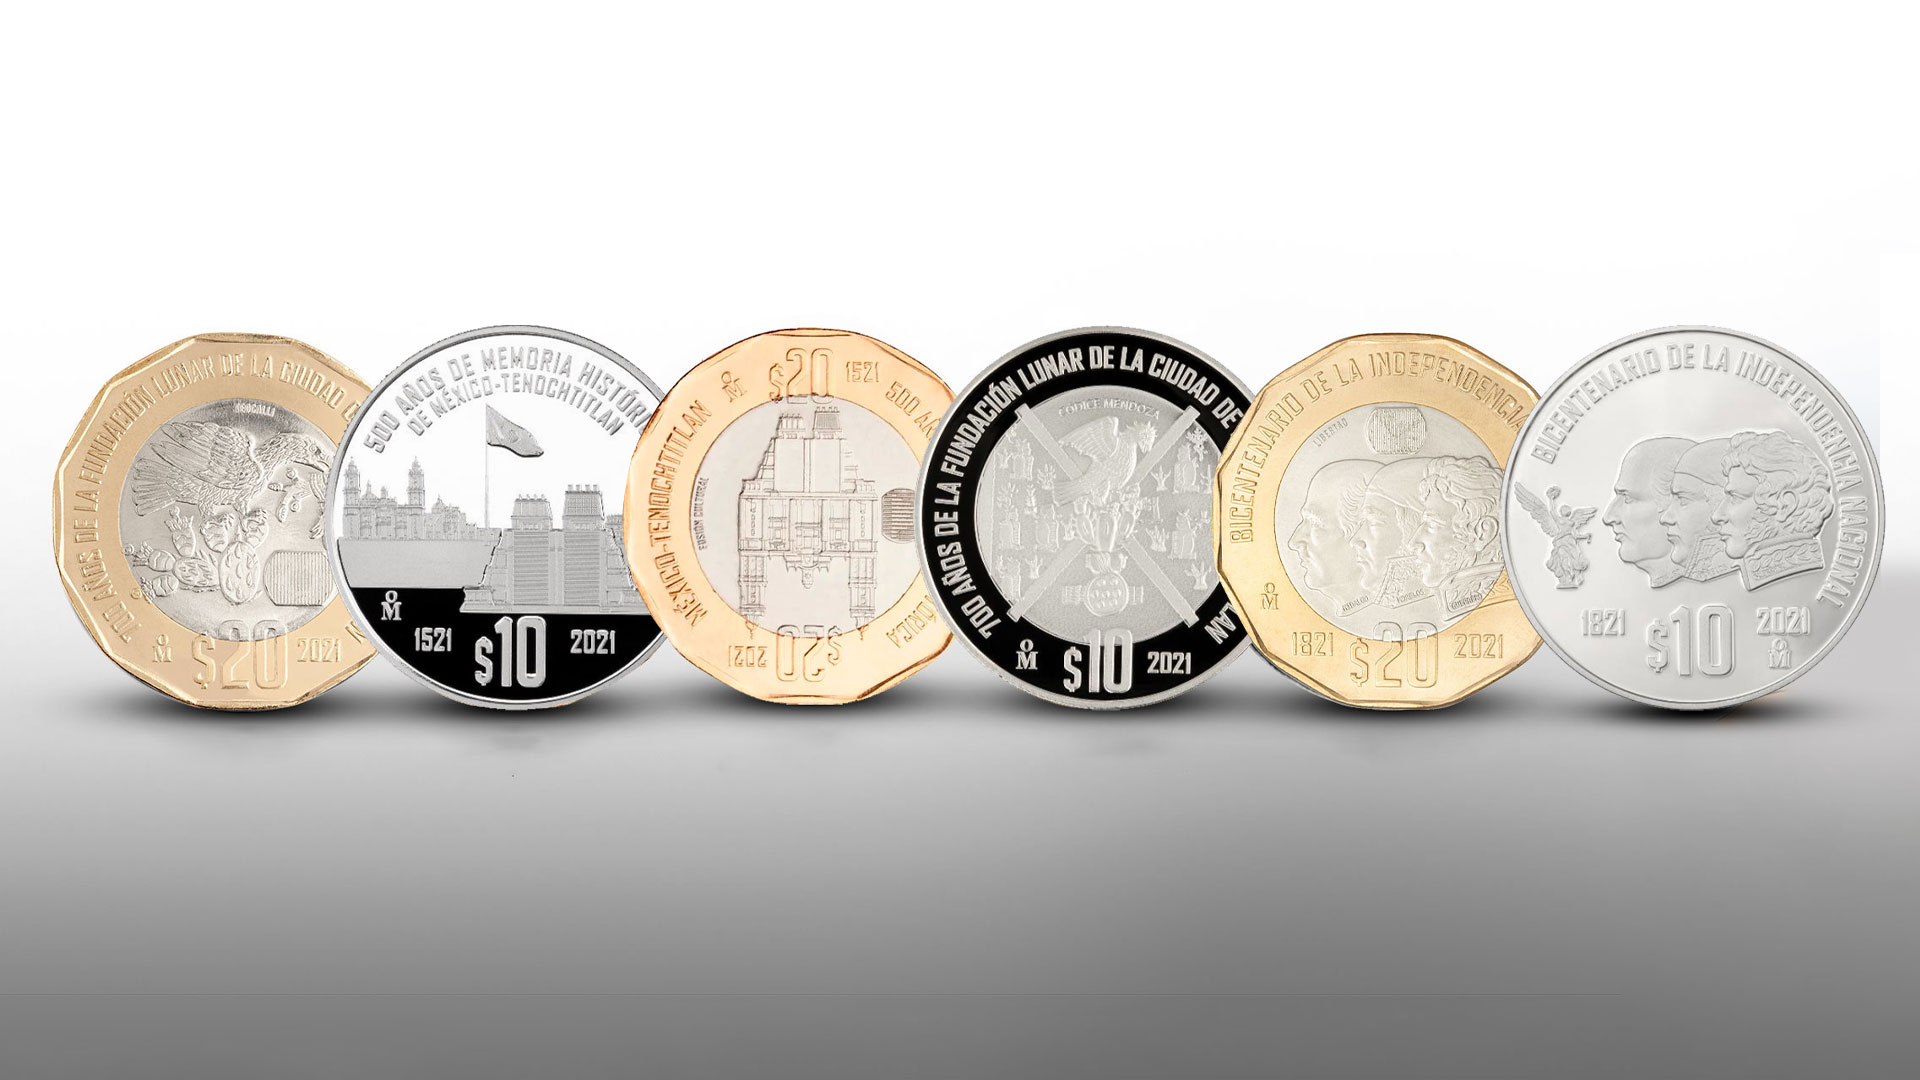 Monedas conmemorativas. (Foto: Infobae)